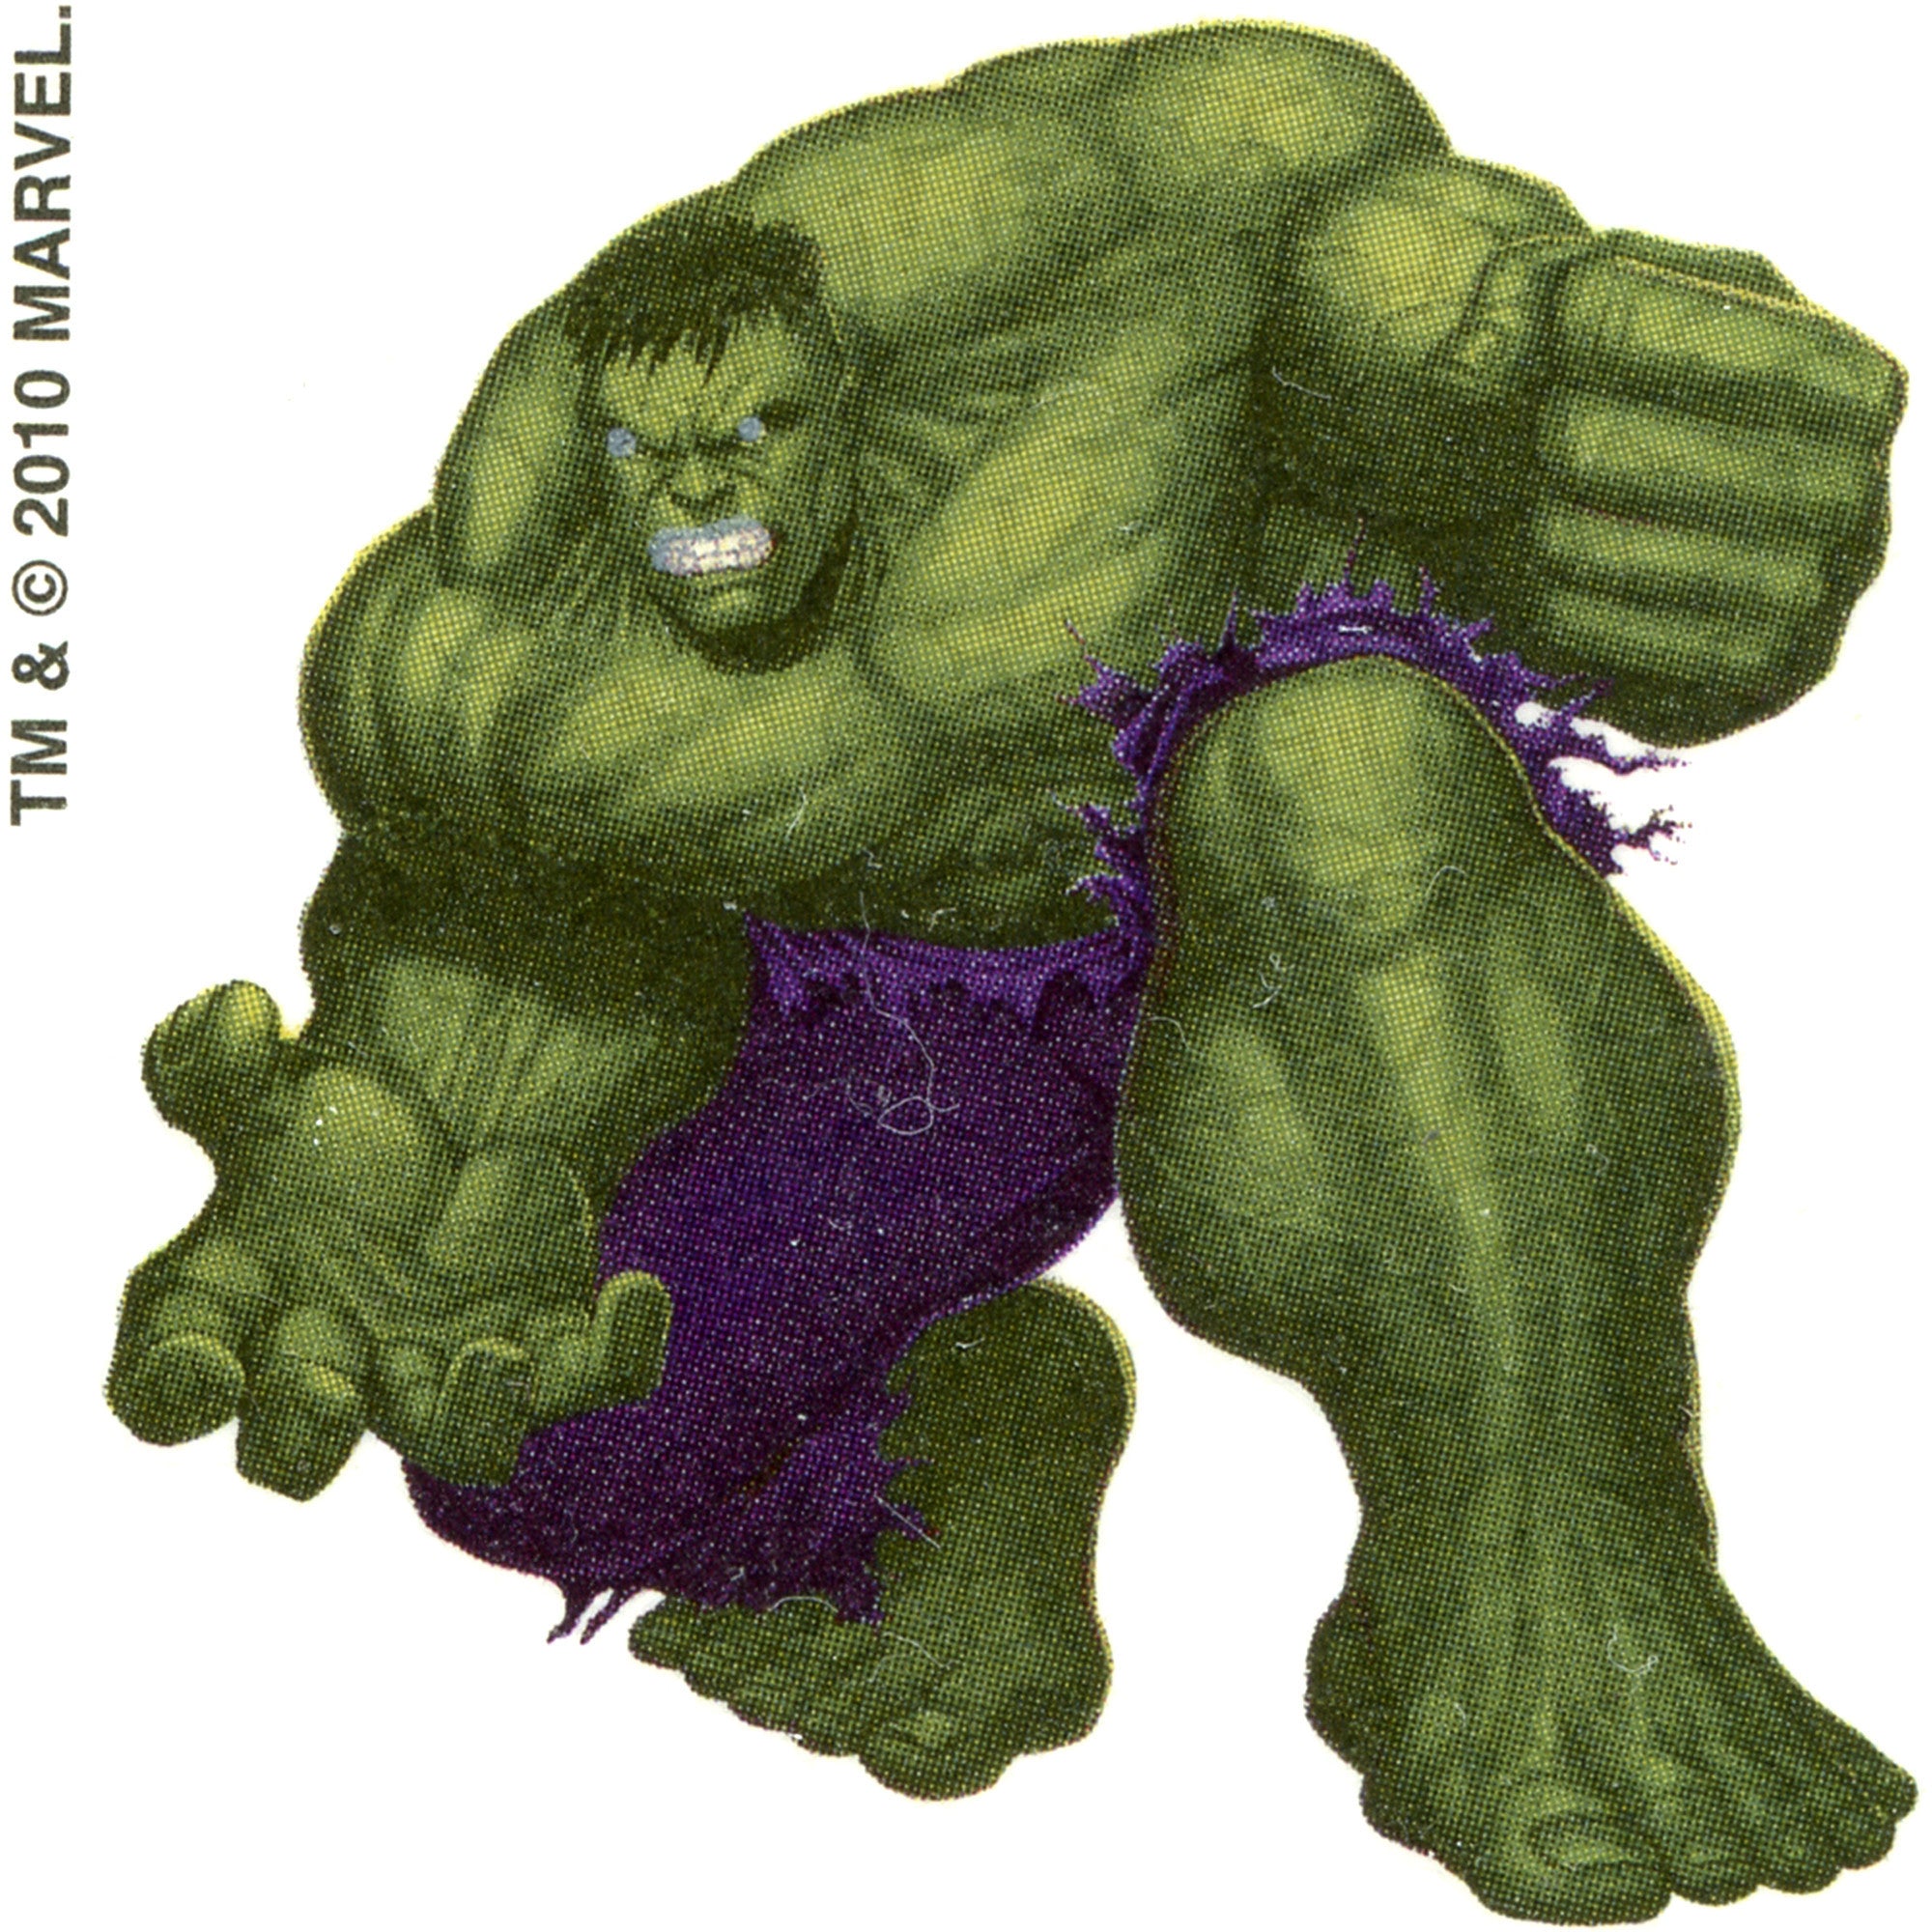 Hulk Temporary Tattoo 2x2